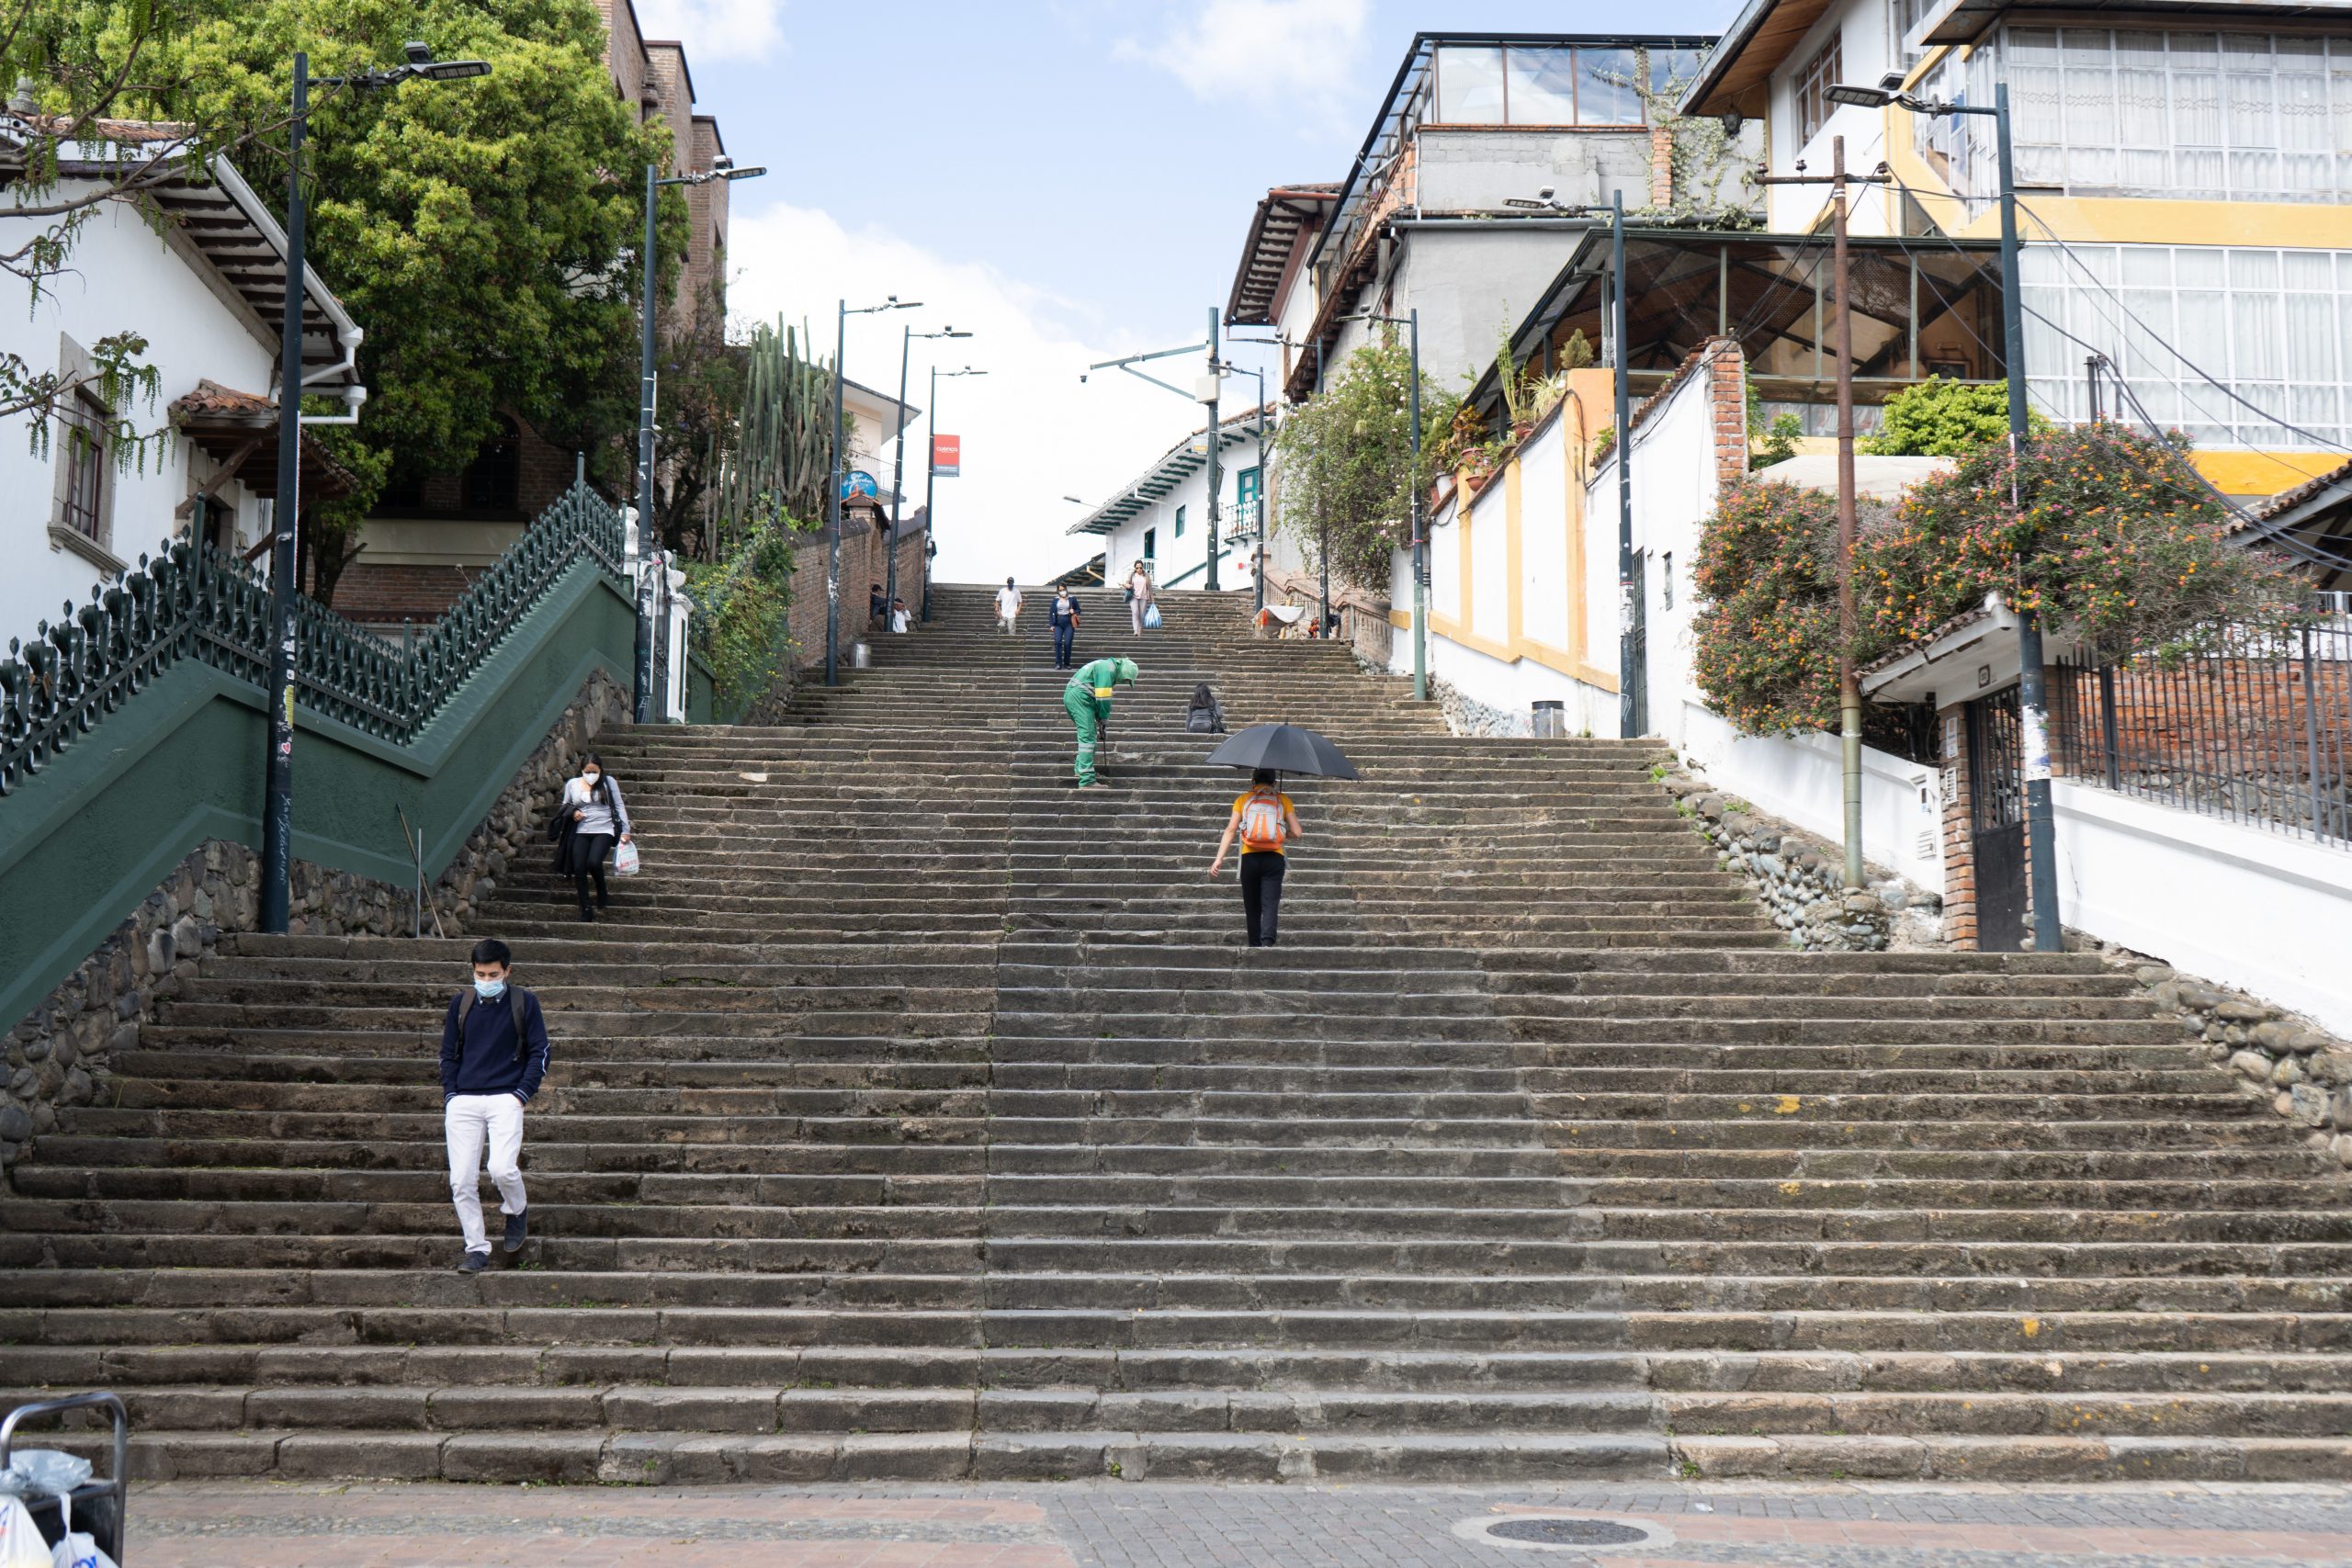 Escalinatas in Cuenca